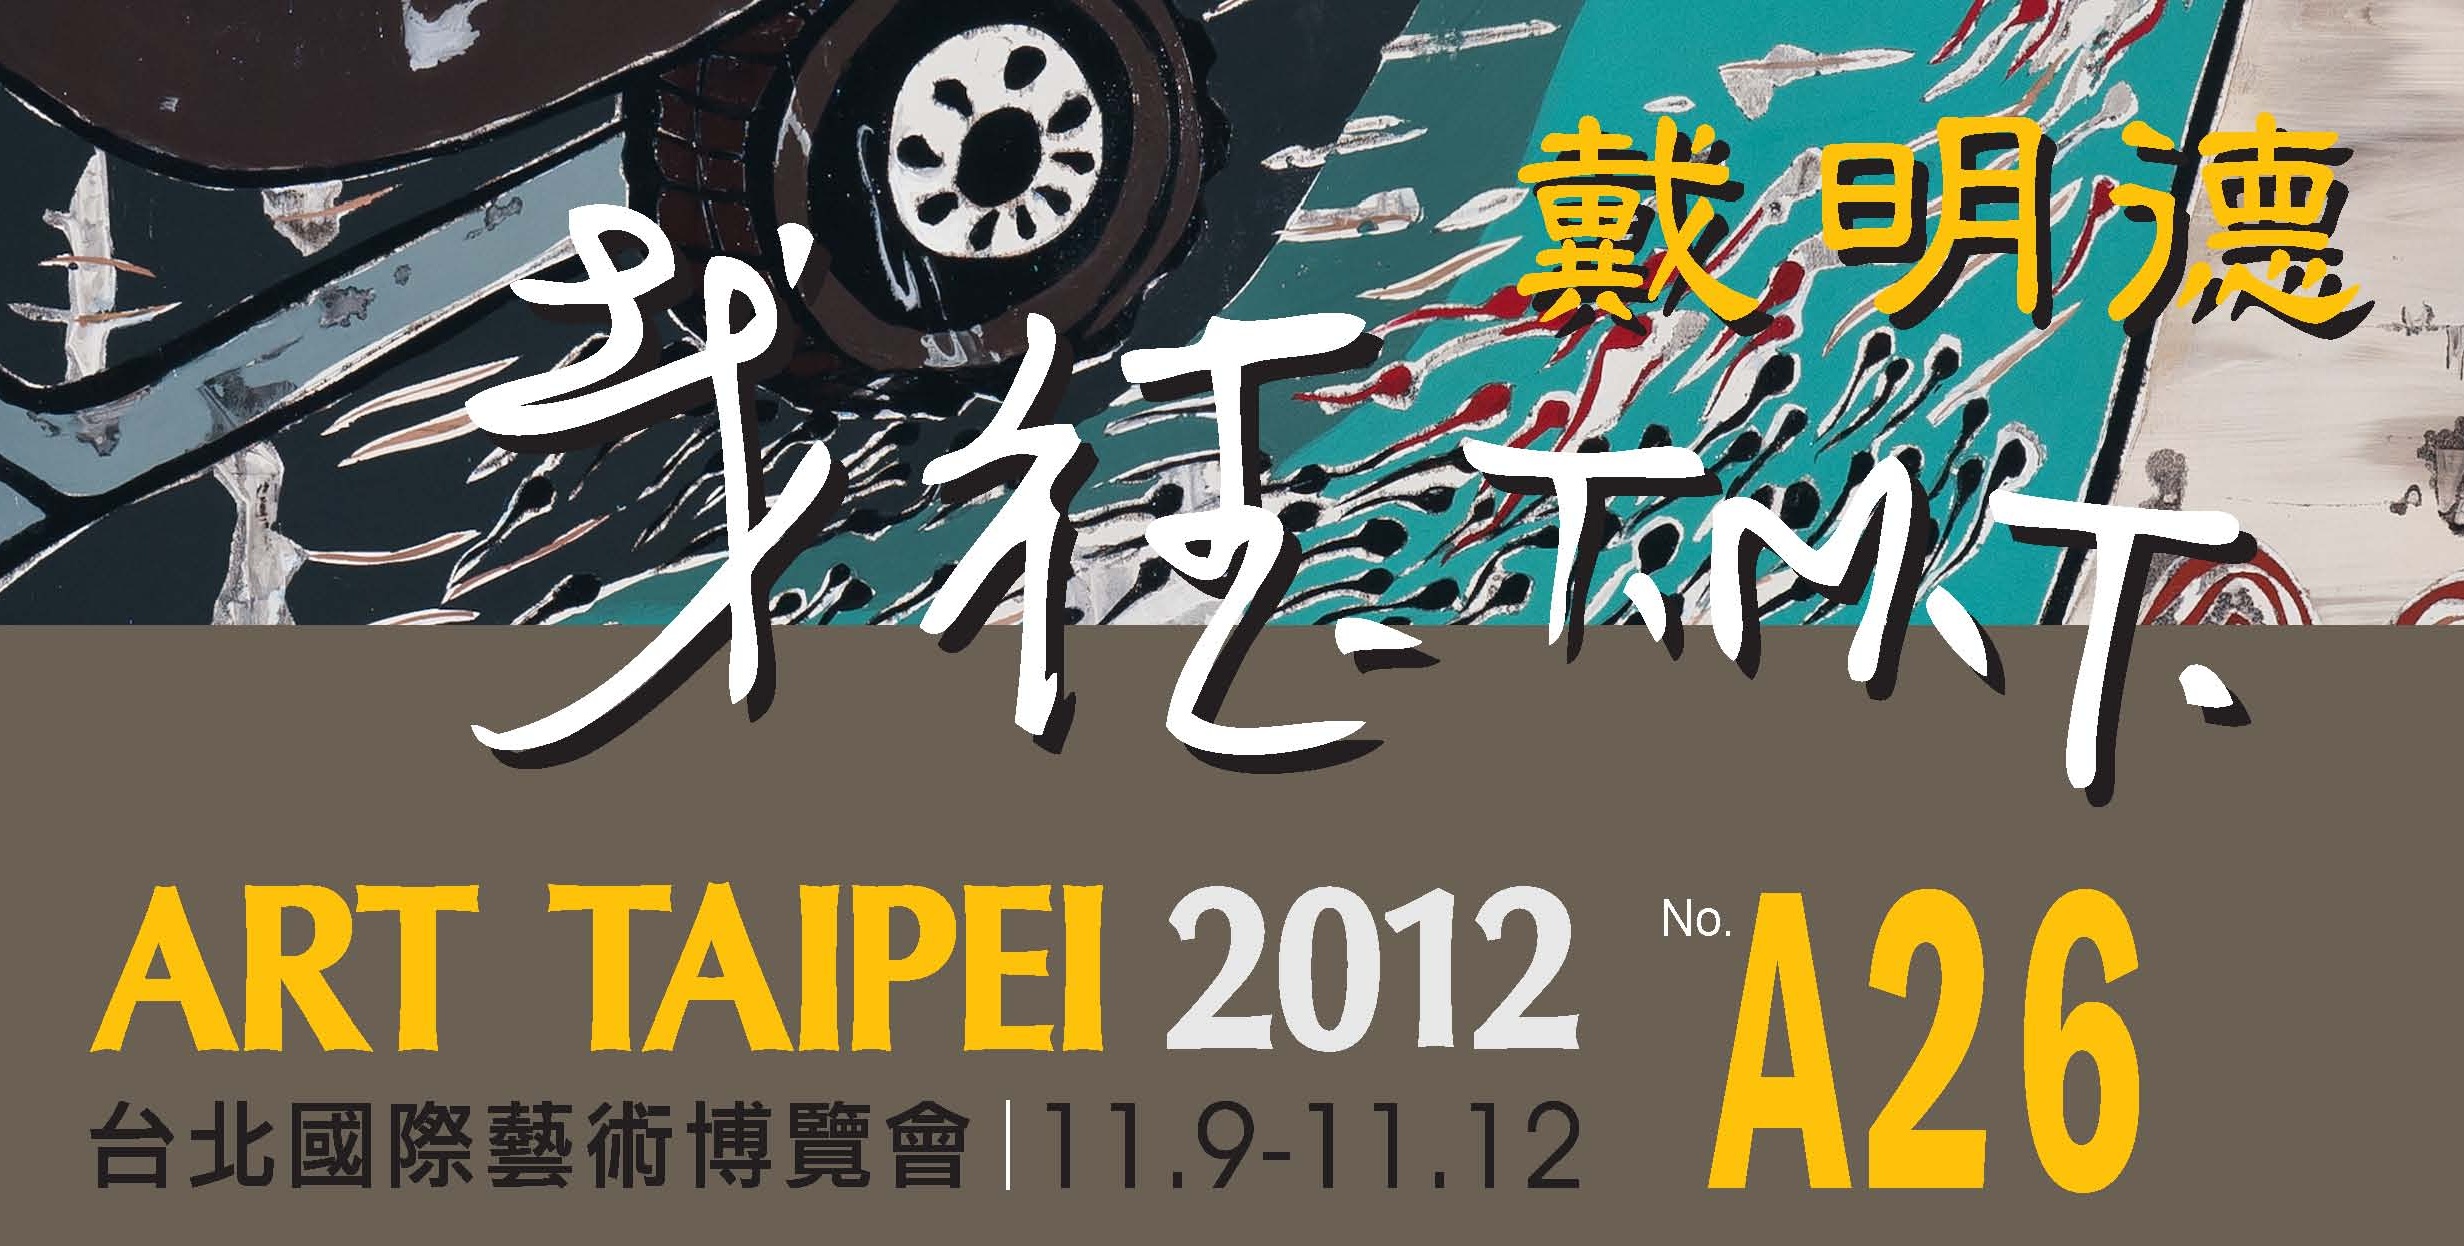 2012台北藝術博覽會 展位A26 2012/11/9~11/12